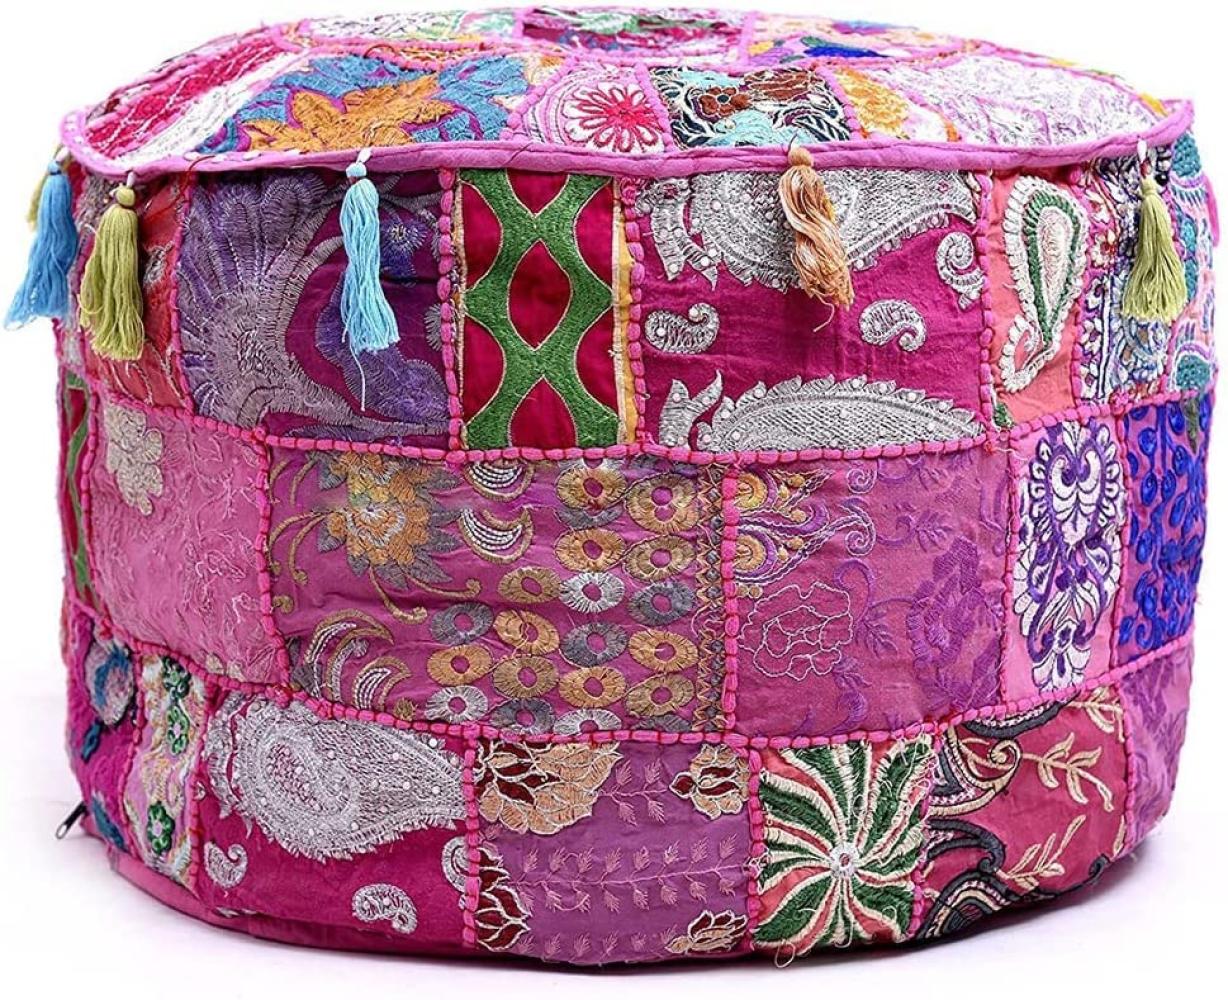 Aakriti Indian Pouf Fußhocker mit Stickerei Pouf, indische Baumwolle, Pouffe osmanischen Pouf Cover mit ethnischem Dekor Kunst - Cover (Pink, 46x33 cms) Bild 1